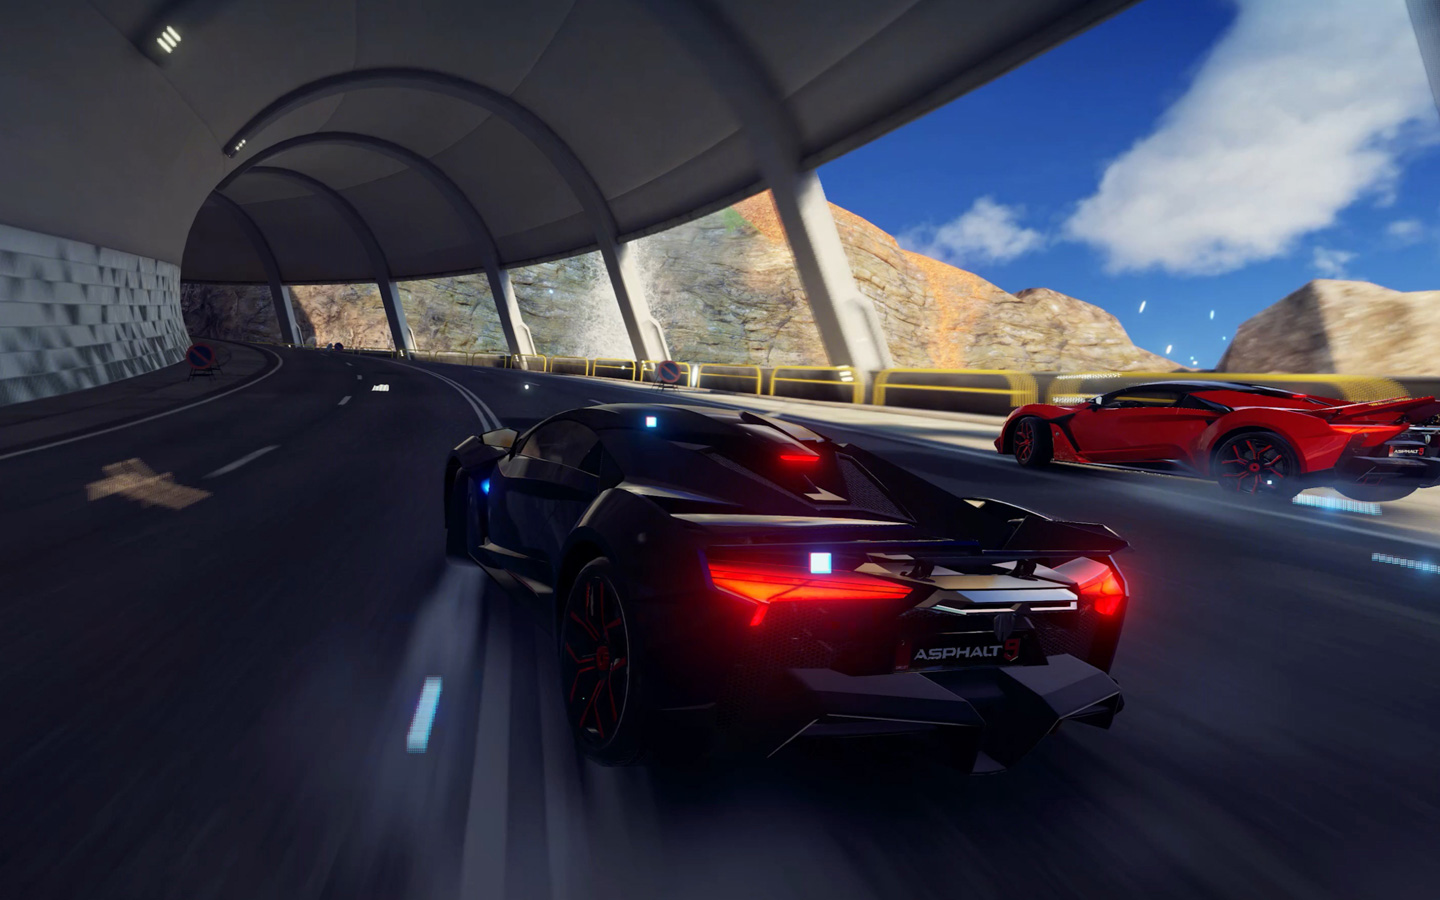 影片展示需要大量圖像處理的電子遊戲，當中有幾駕正在競速的車穿越隧道。